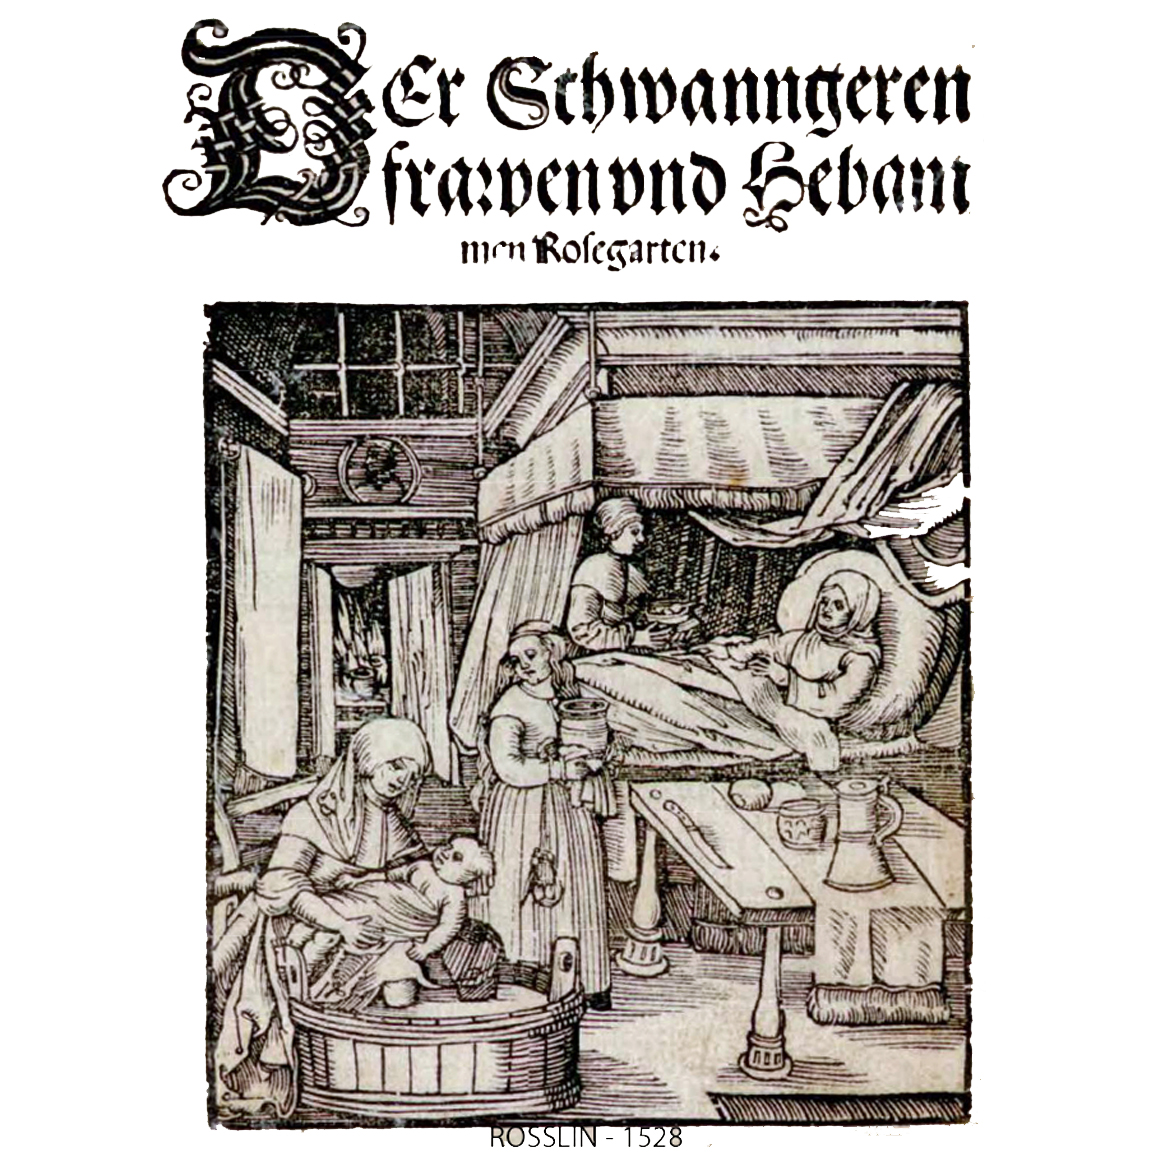 1528-ROSSLIN - Der Schwanngeren frawen und Hebammen-title page